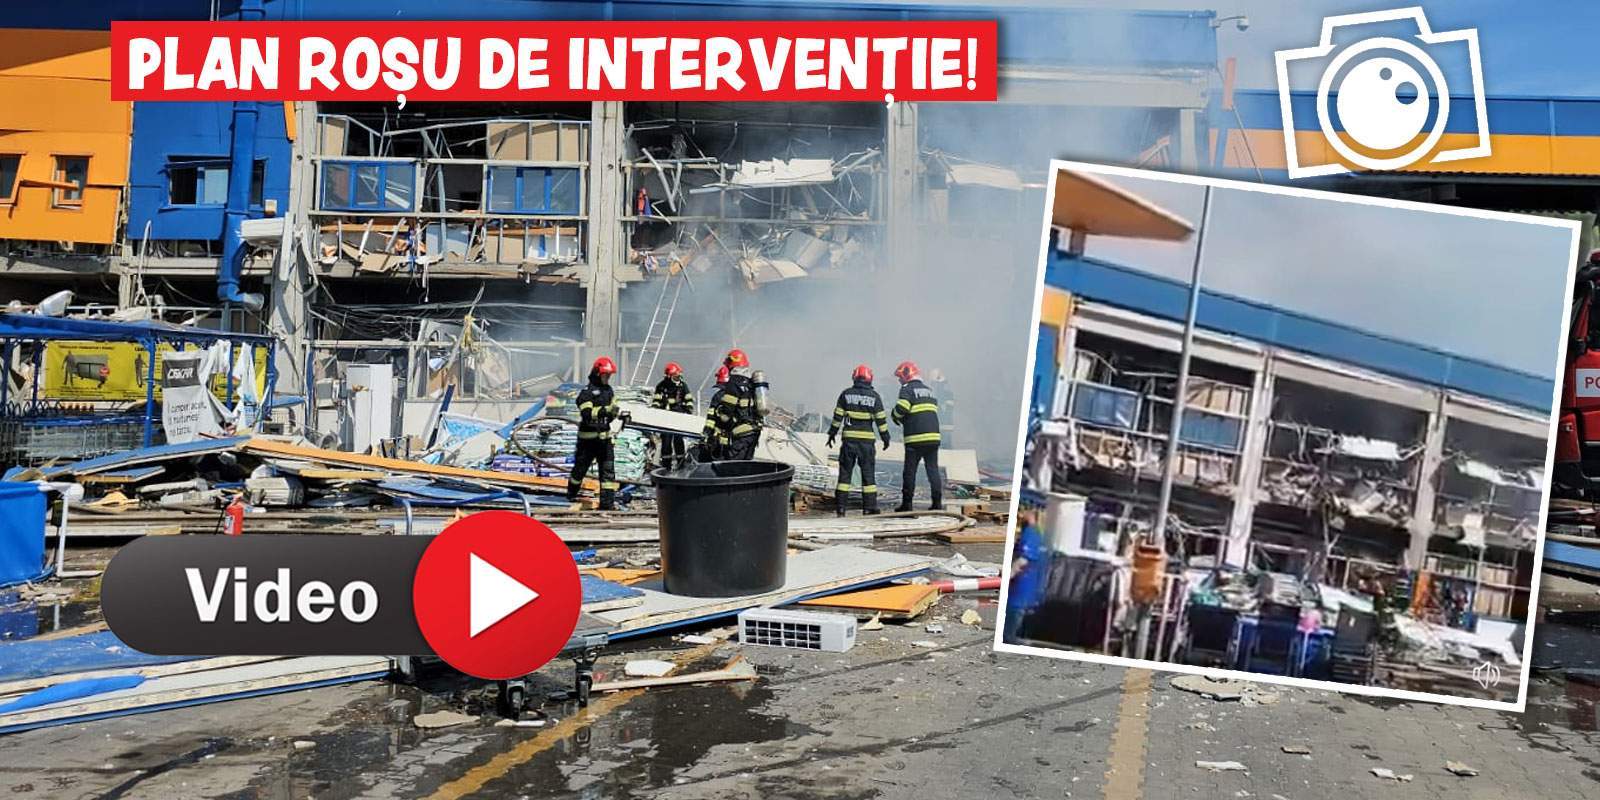 Explozie puternică la un magazin de materiale de construcții din Botoșani! Autoritățile au activat Planul Roșu / FOTO